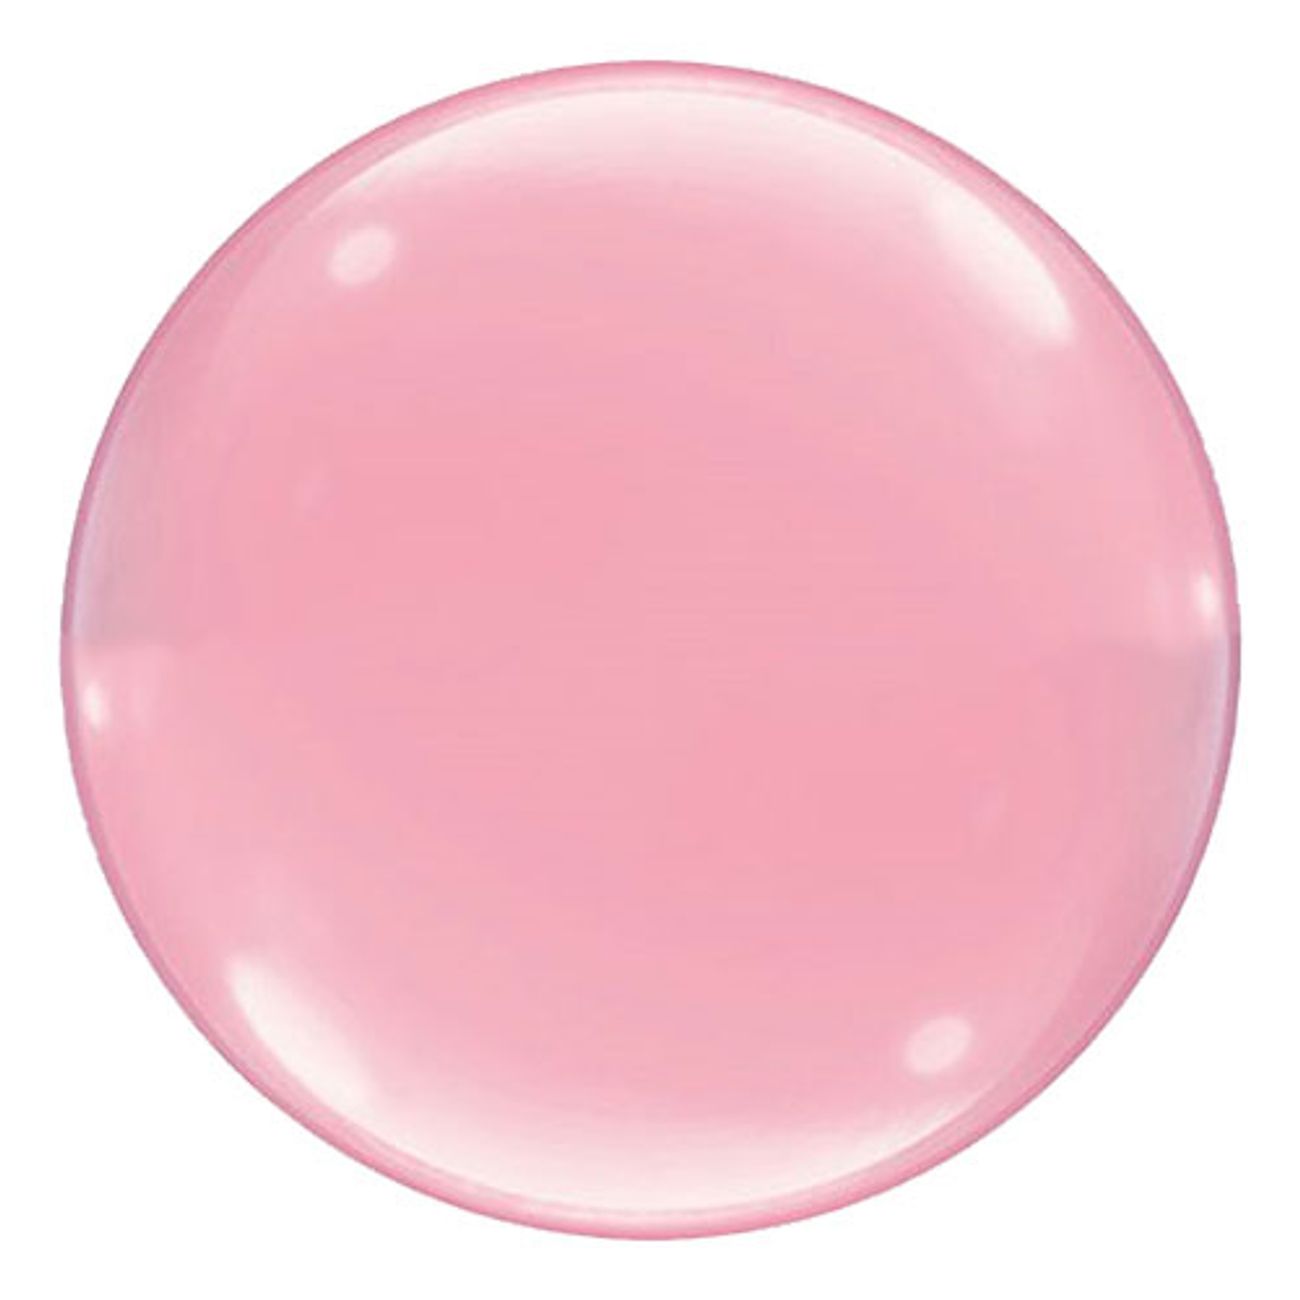 bubbelballonger-rosa-1